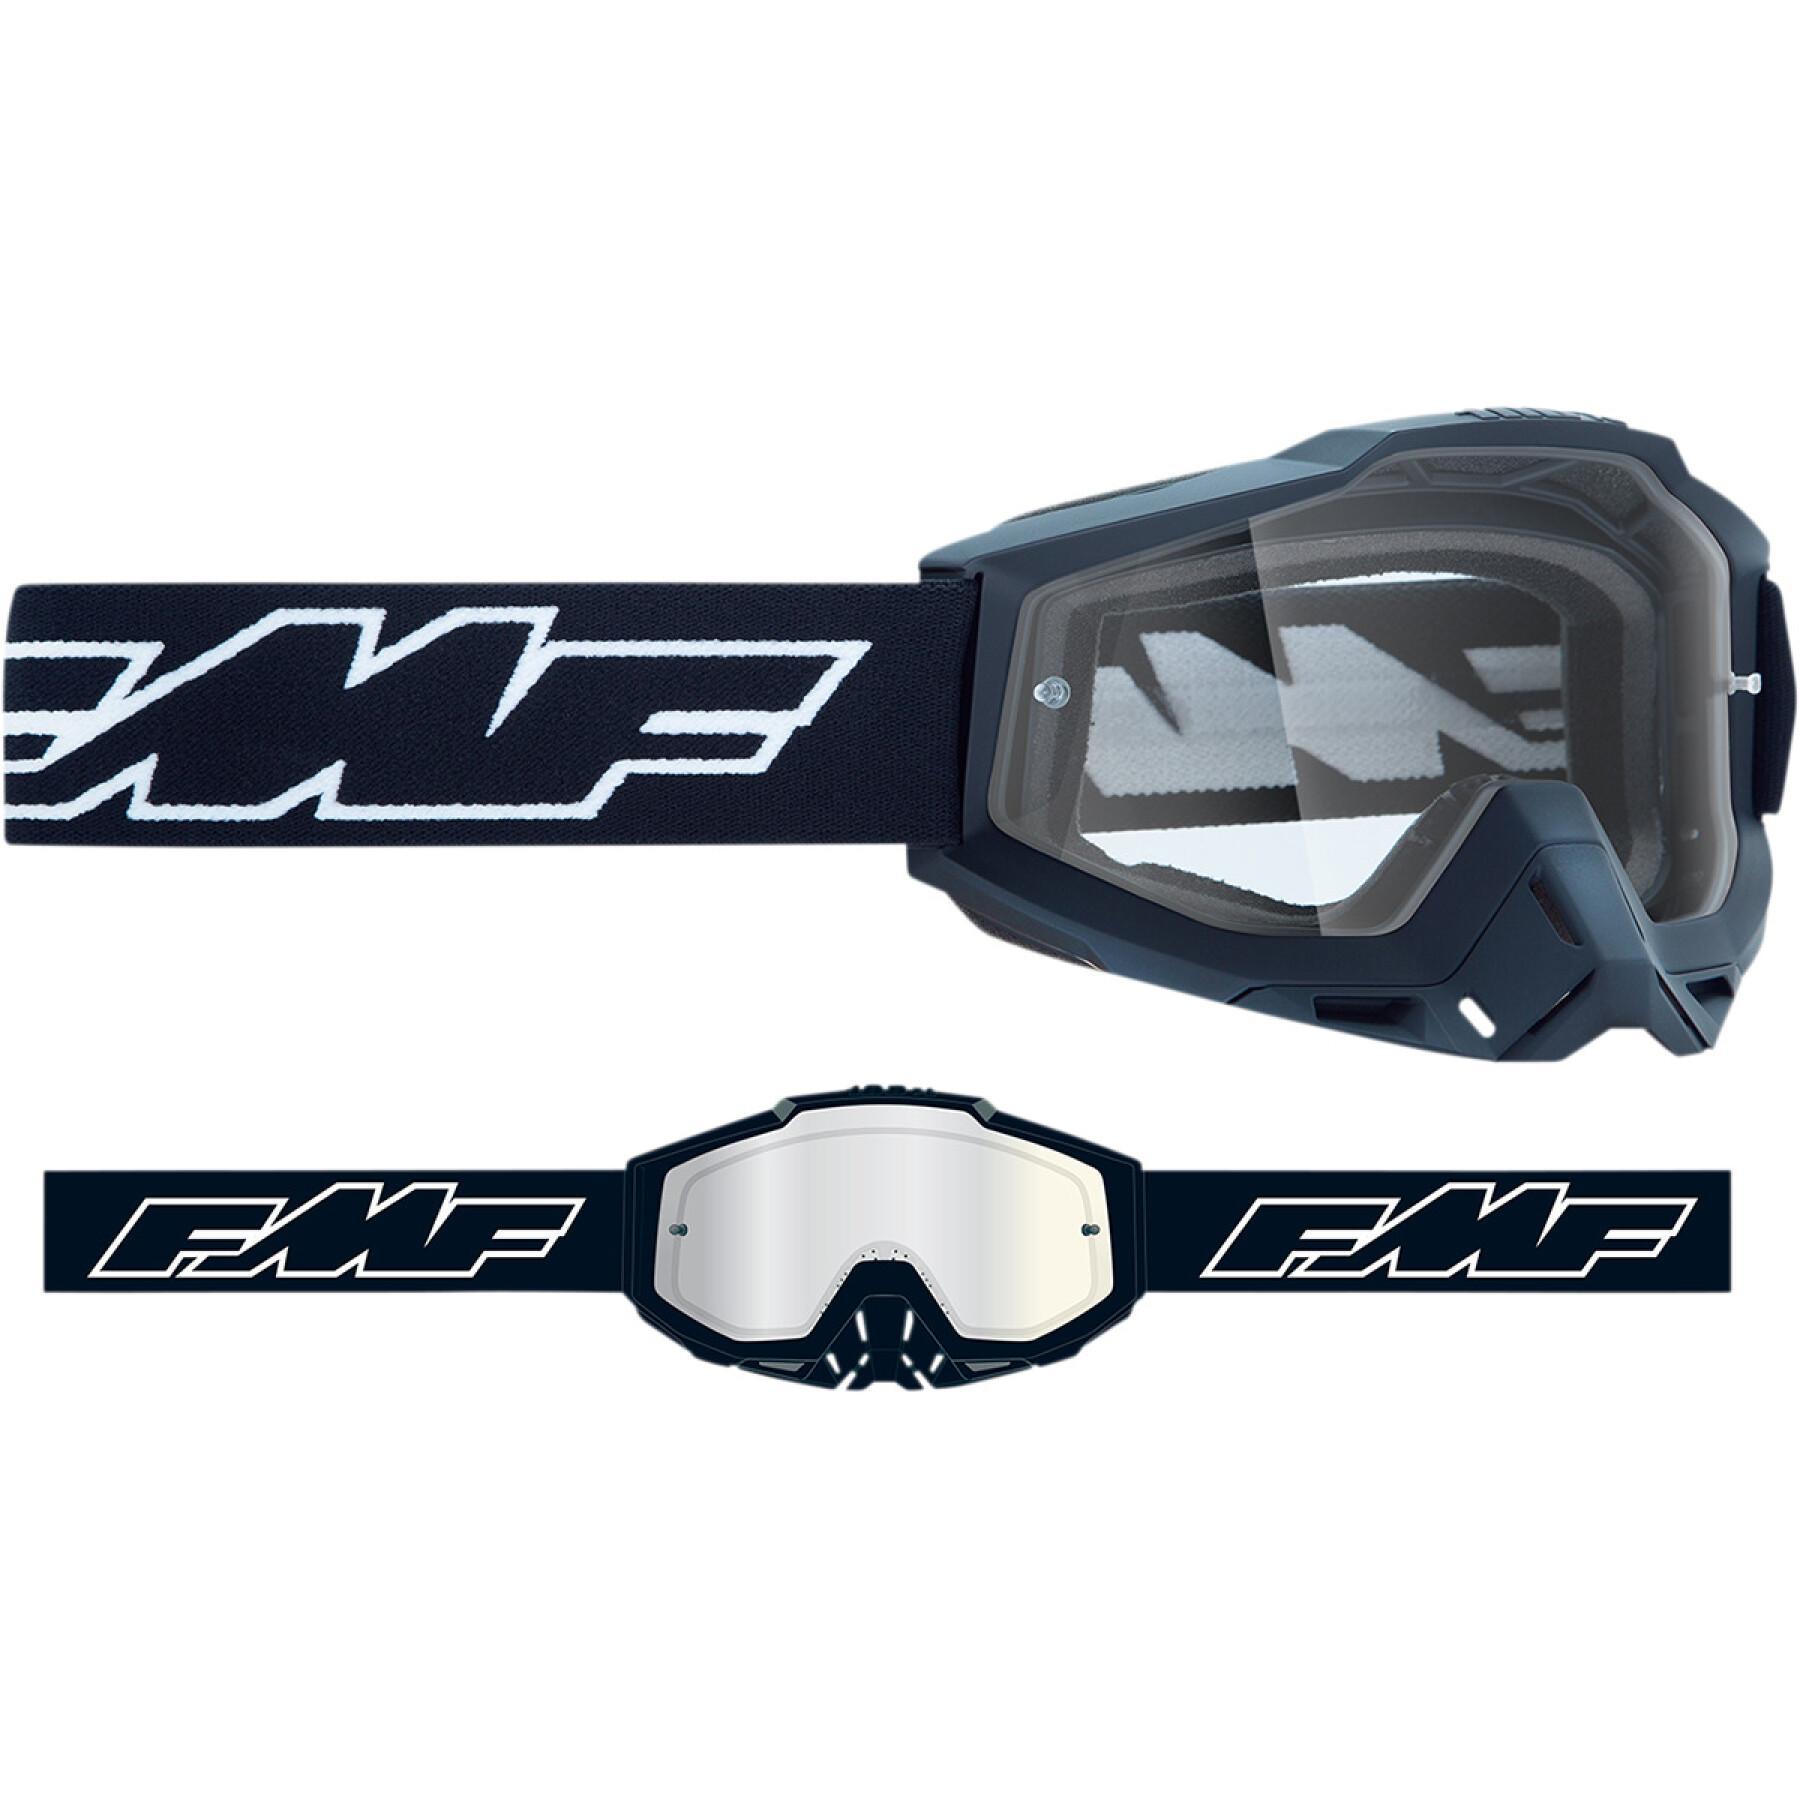 Childrens motorcycle mask FMF Vision Rocket